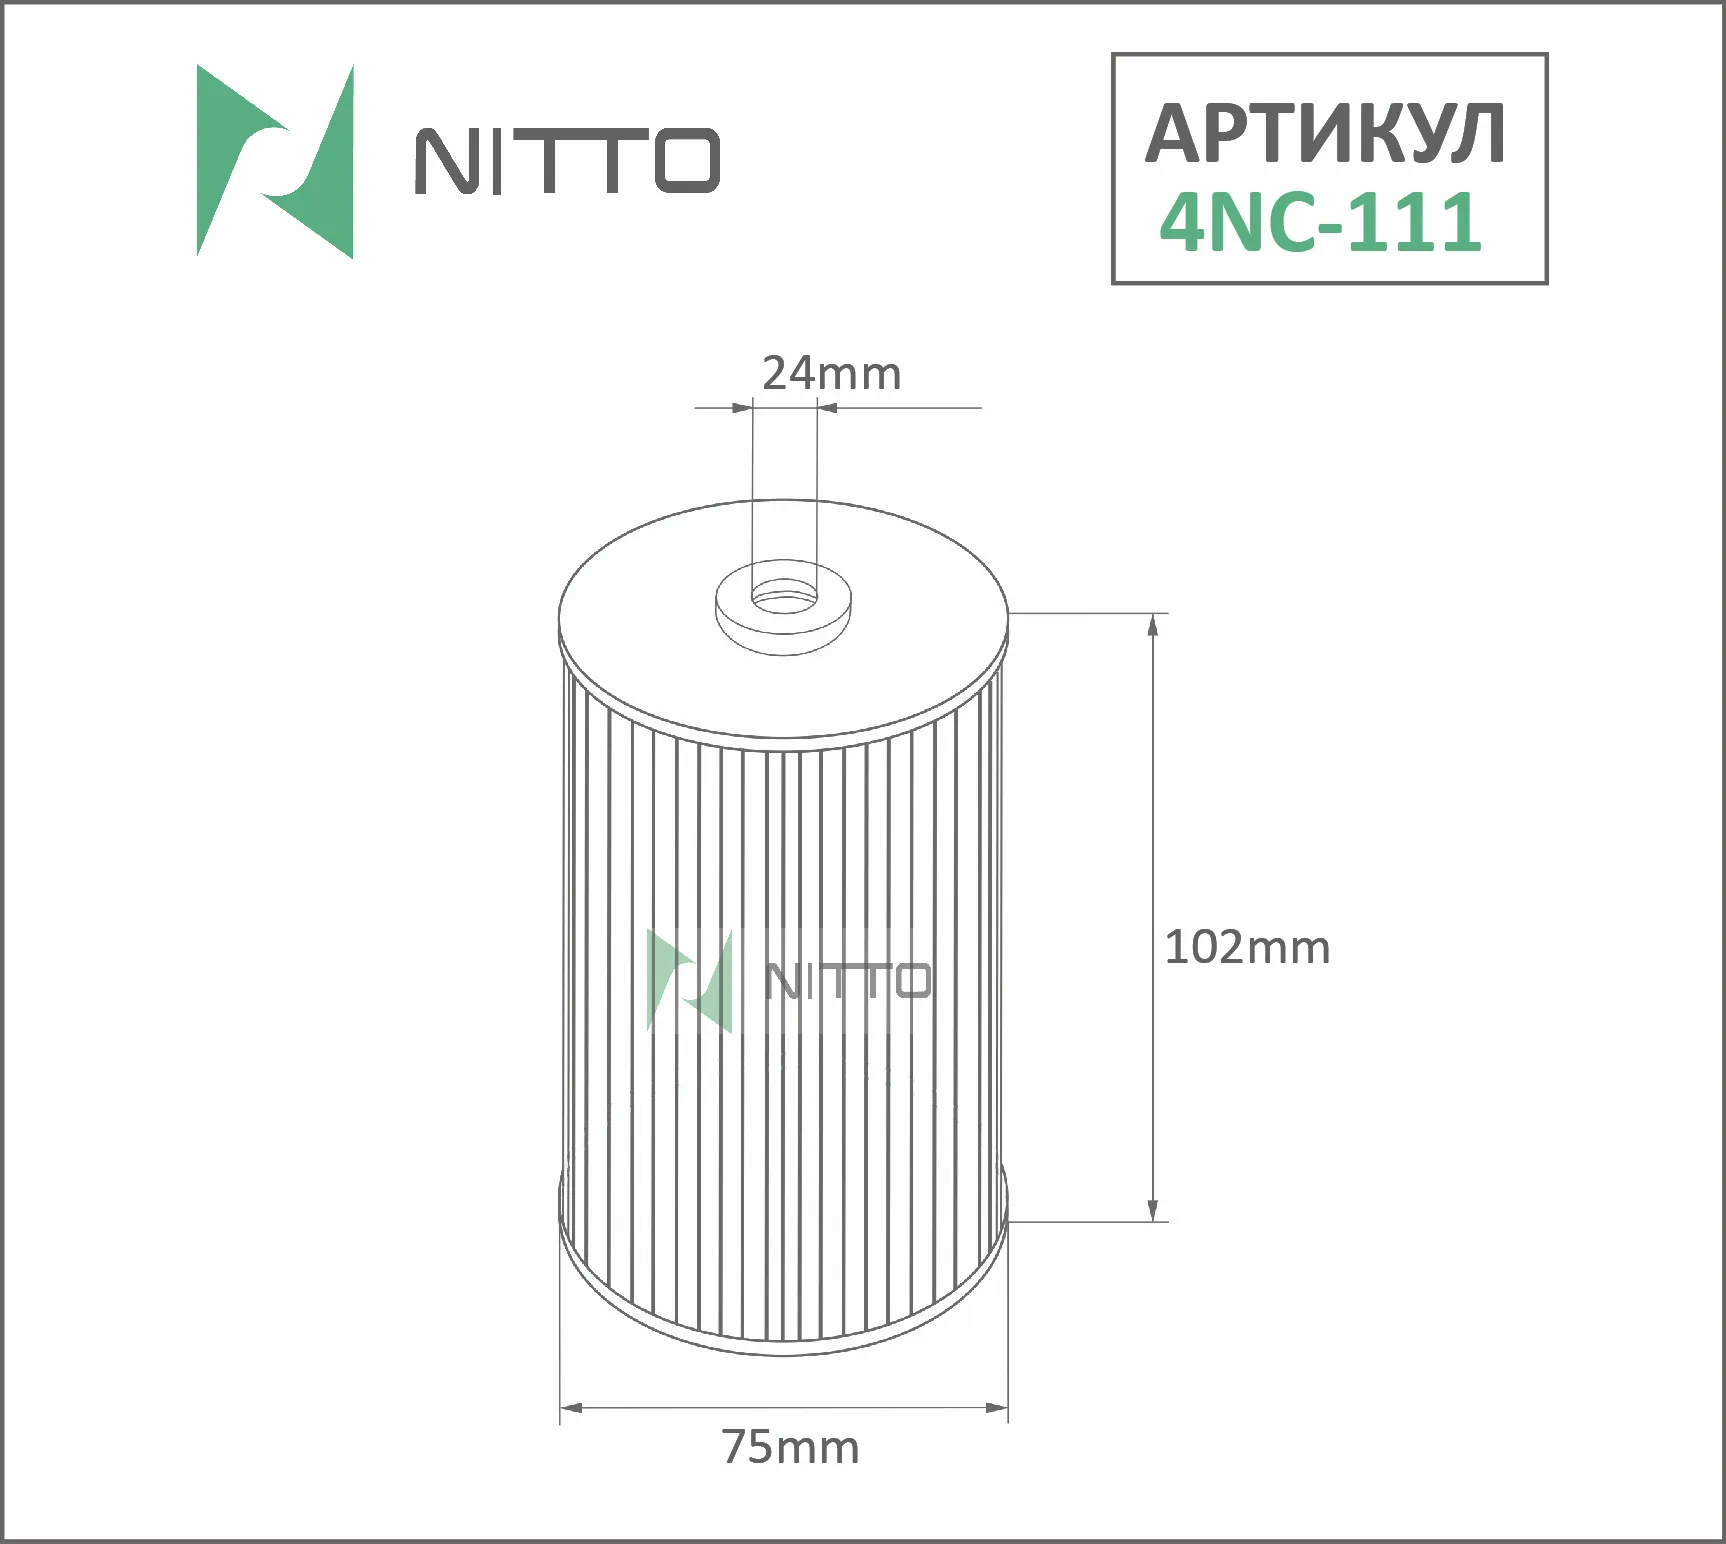 Масляный фильтр NITTO для Nissan (4NC-111)